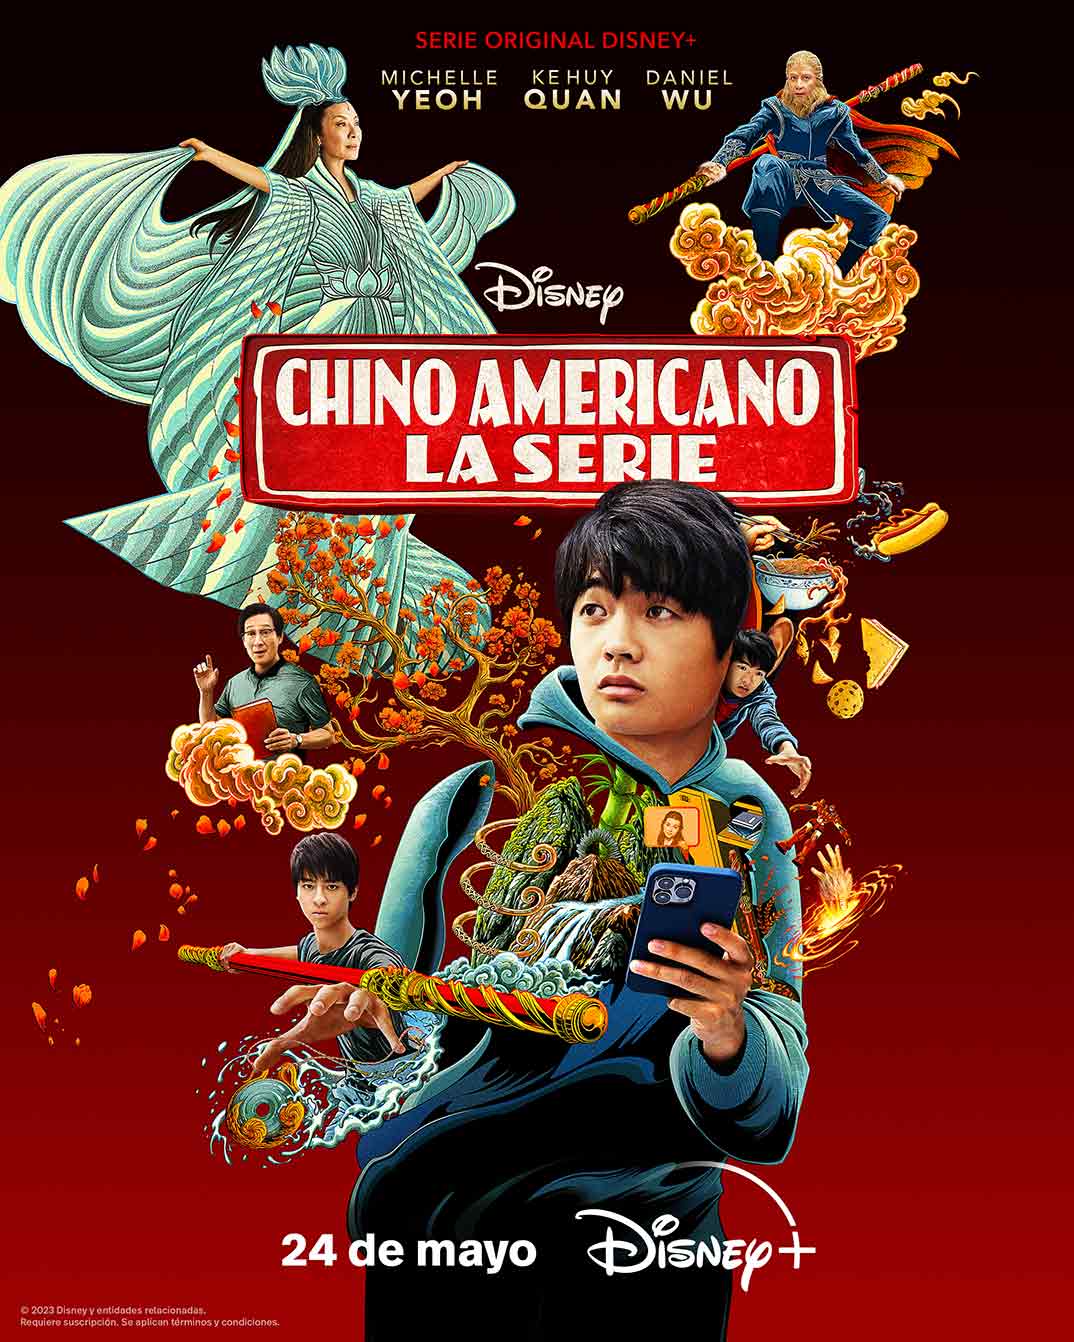 Chino americano, la serie © Disney Plus+